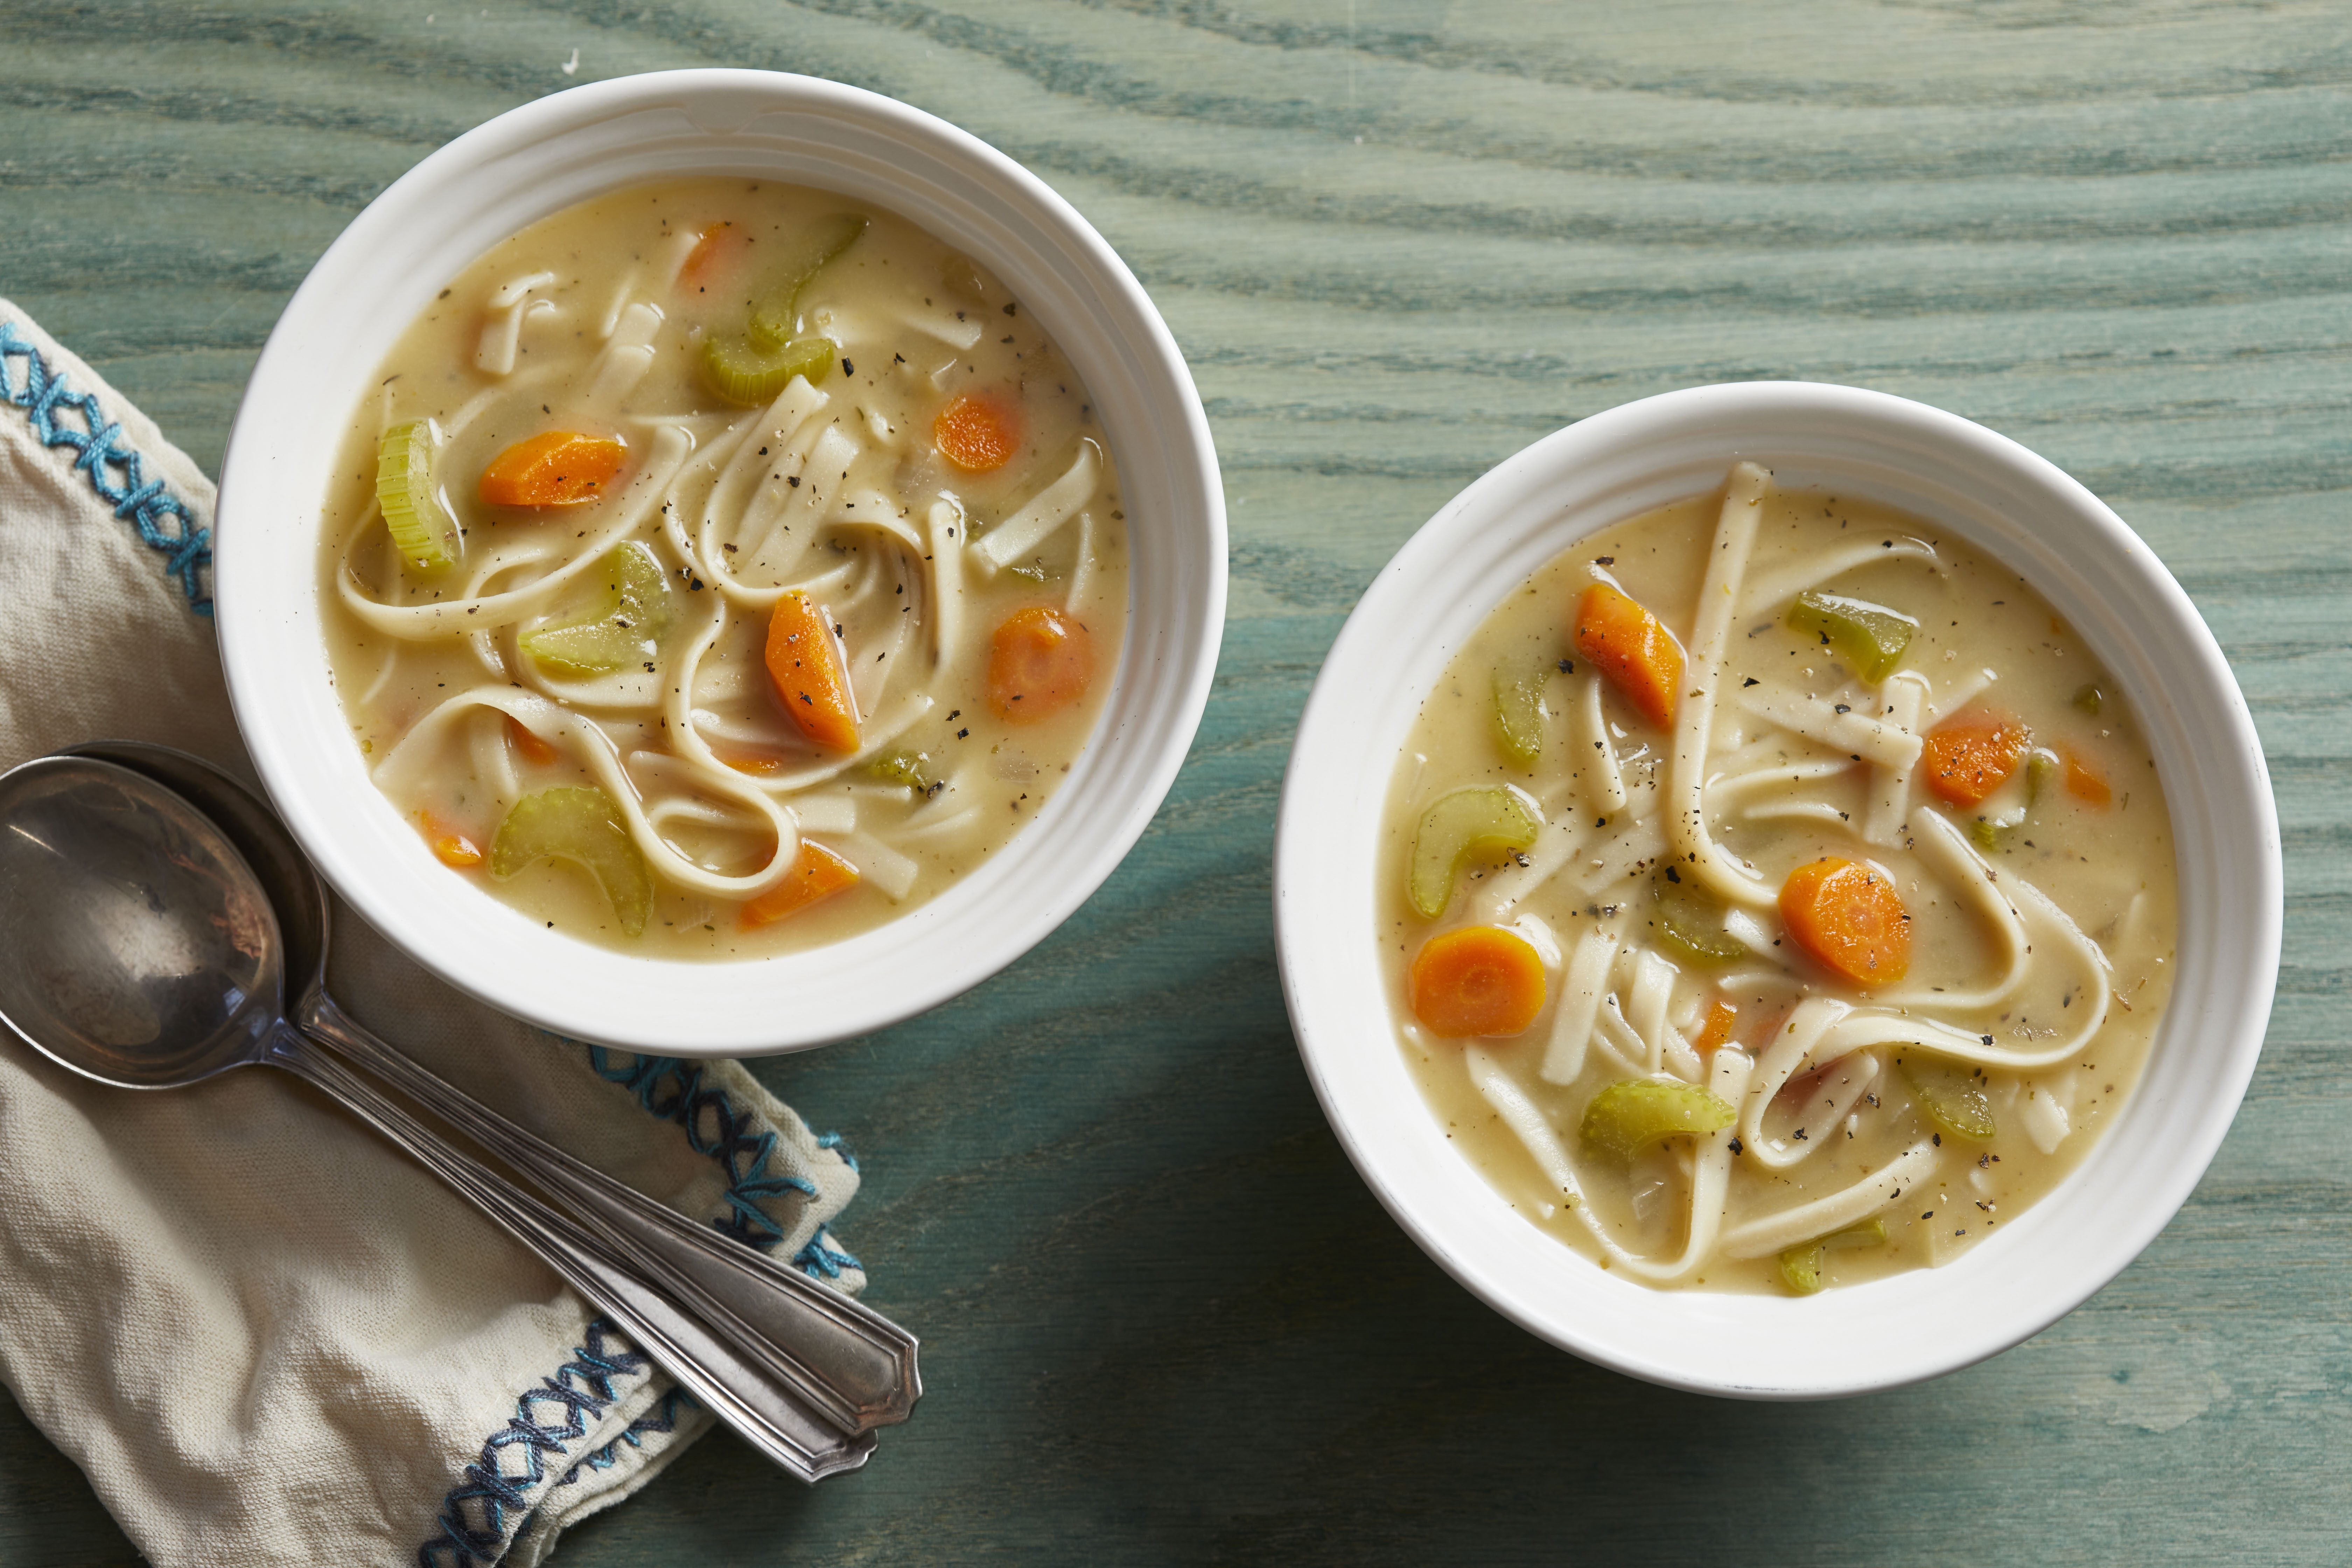 Vegan Noodle Soup